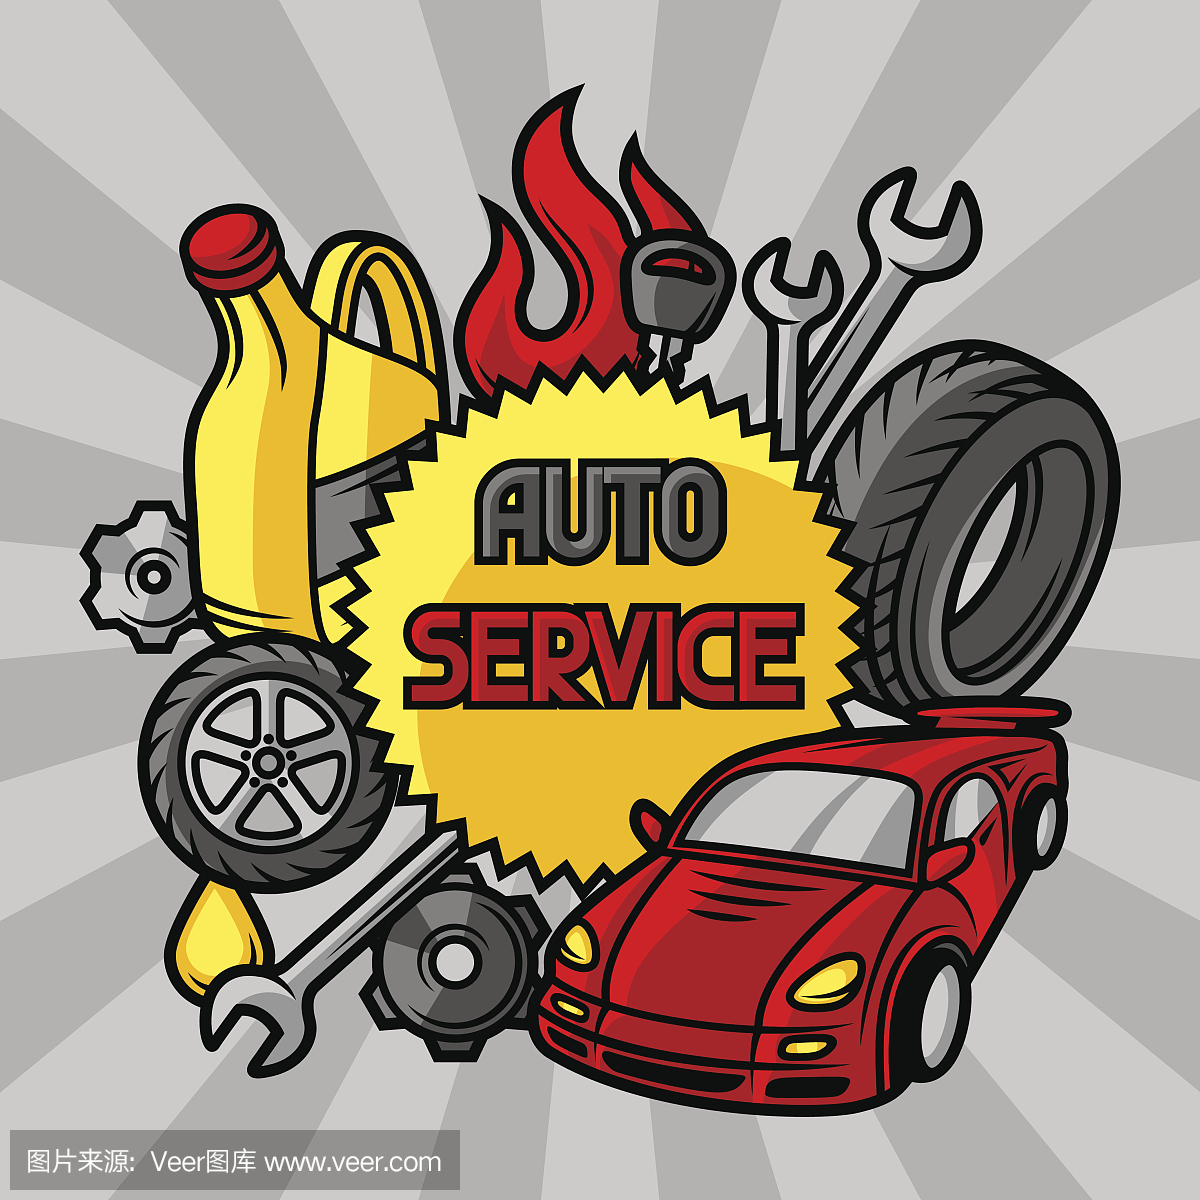 汽车修理的概念与服务对象和项目